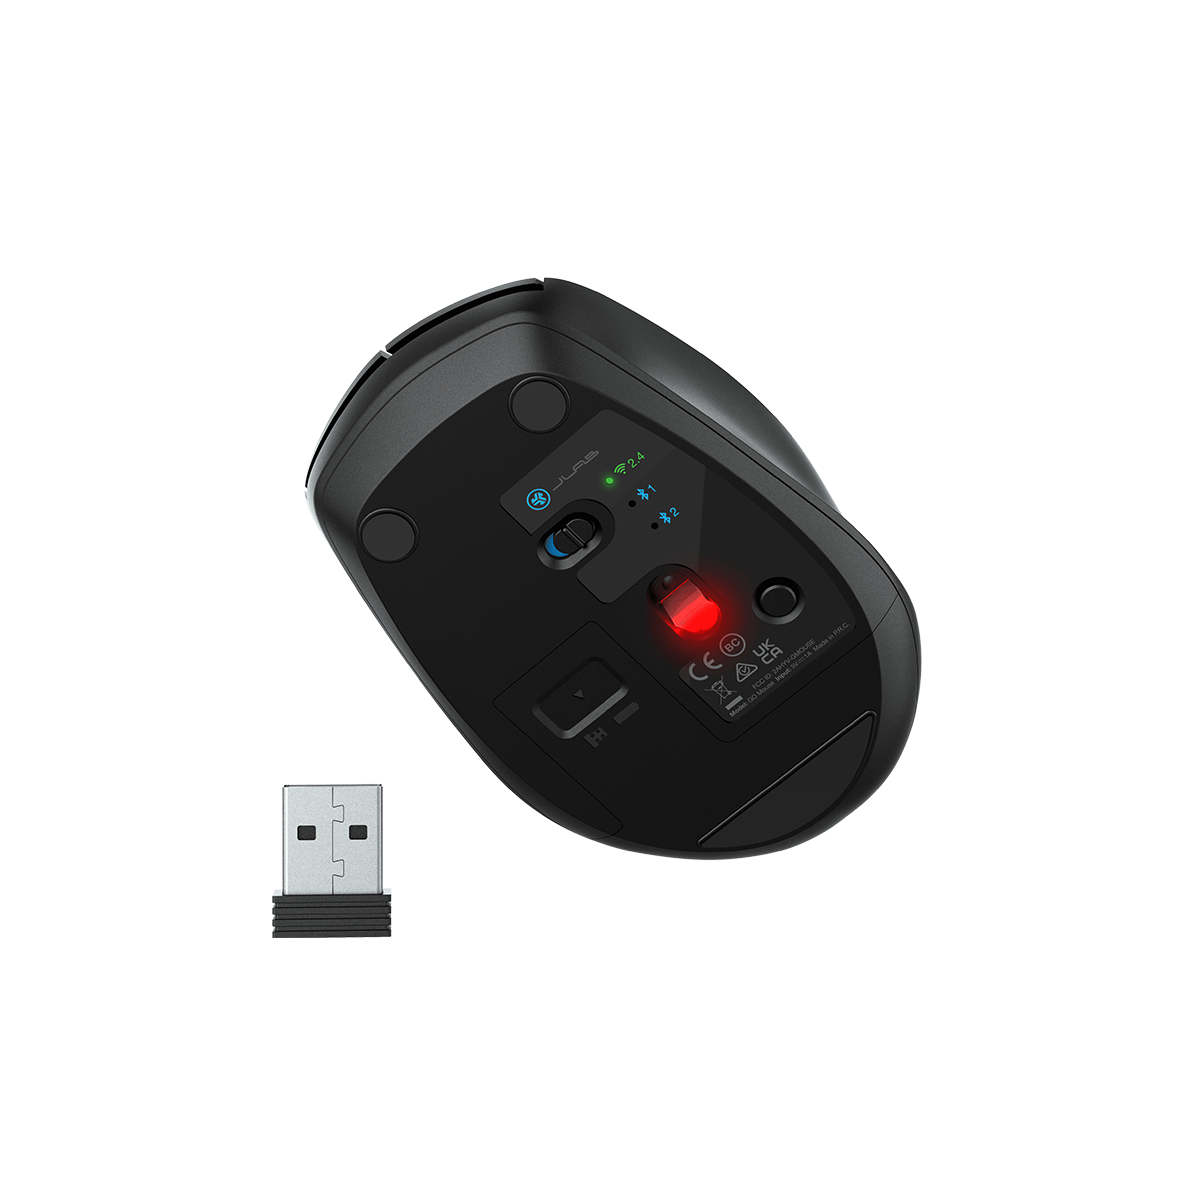 Chuột không dây JLab Go màu đen Bluetooth 5.0 nút bấm yên tĩnh, kết nối 3 thiết bị, pin AA, DPI 1600, Bảo hành 2 năm - Hàng chính hãng